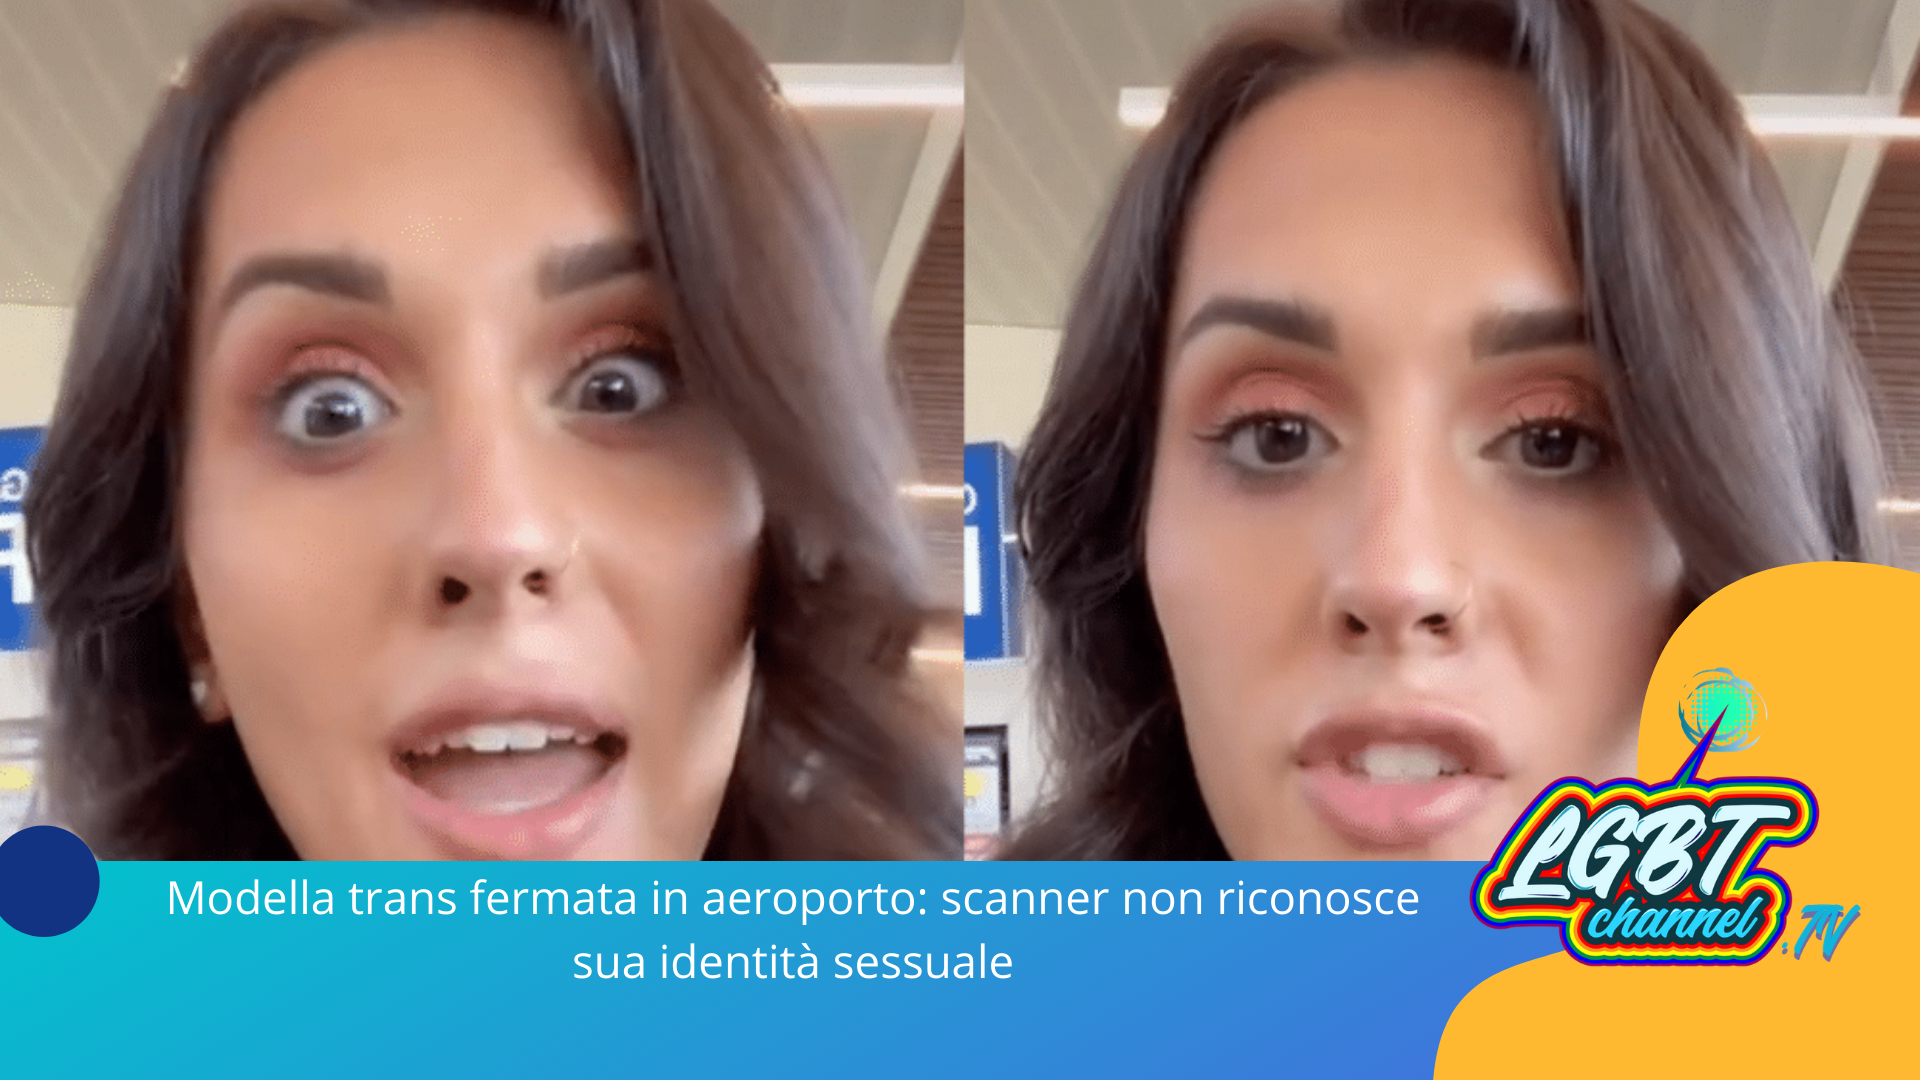 #Trans | Modella trans fermata in aeroporto: scanner non riconosce sua identità sessuale